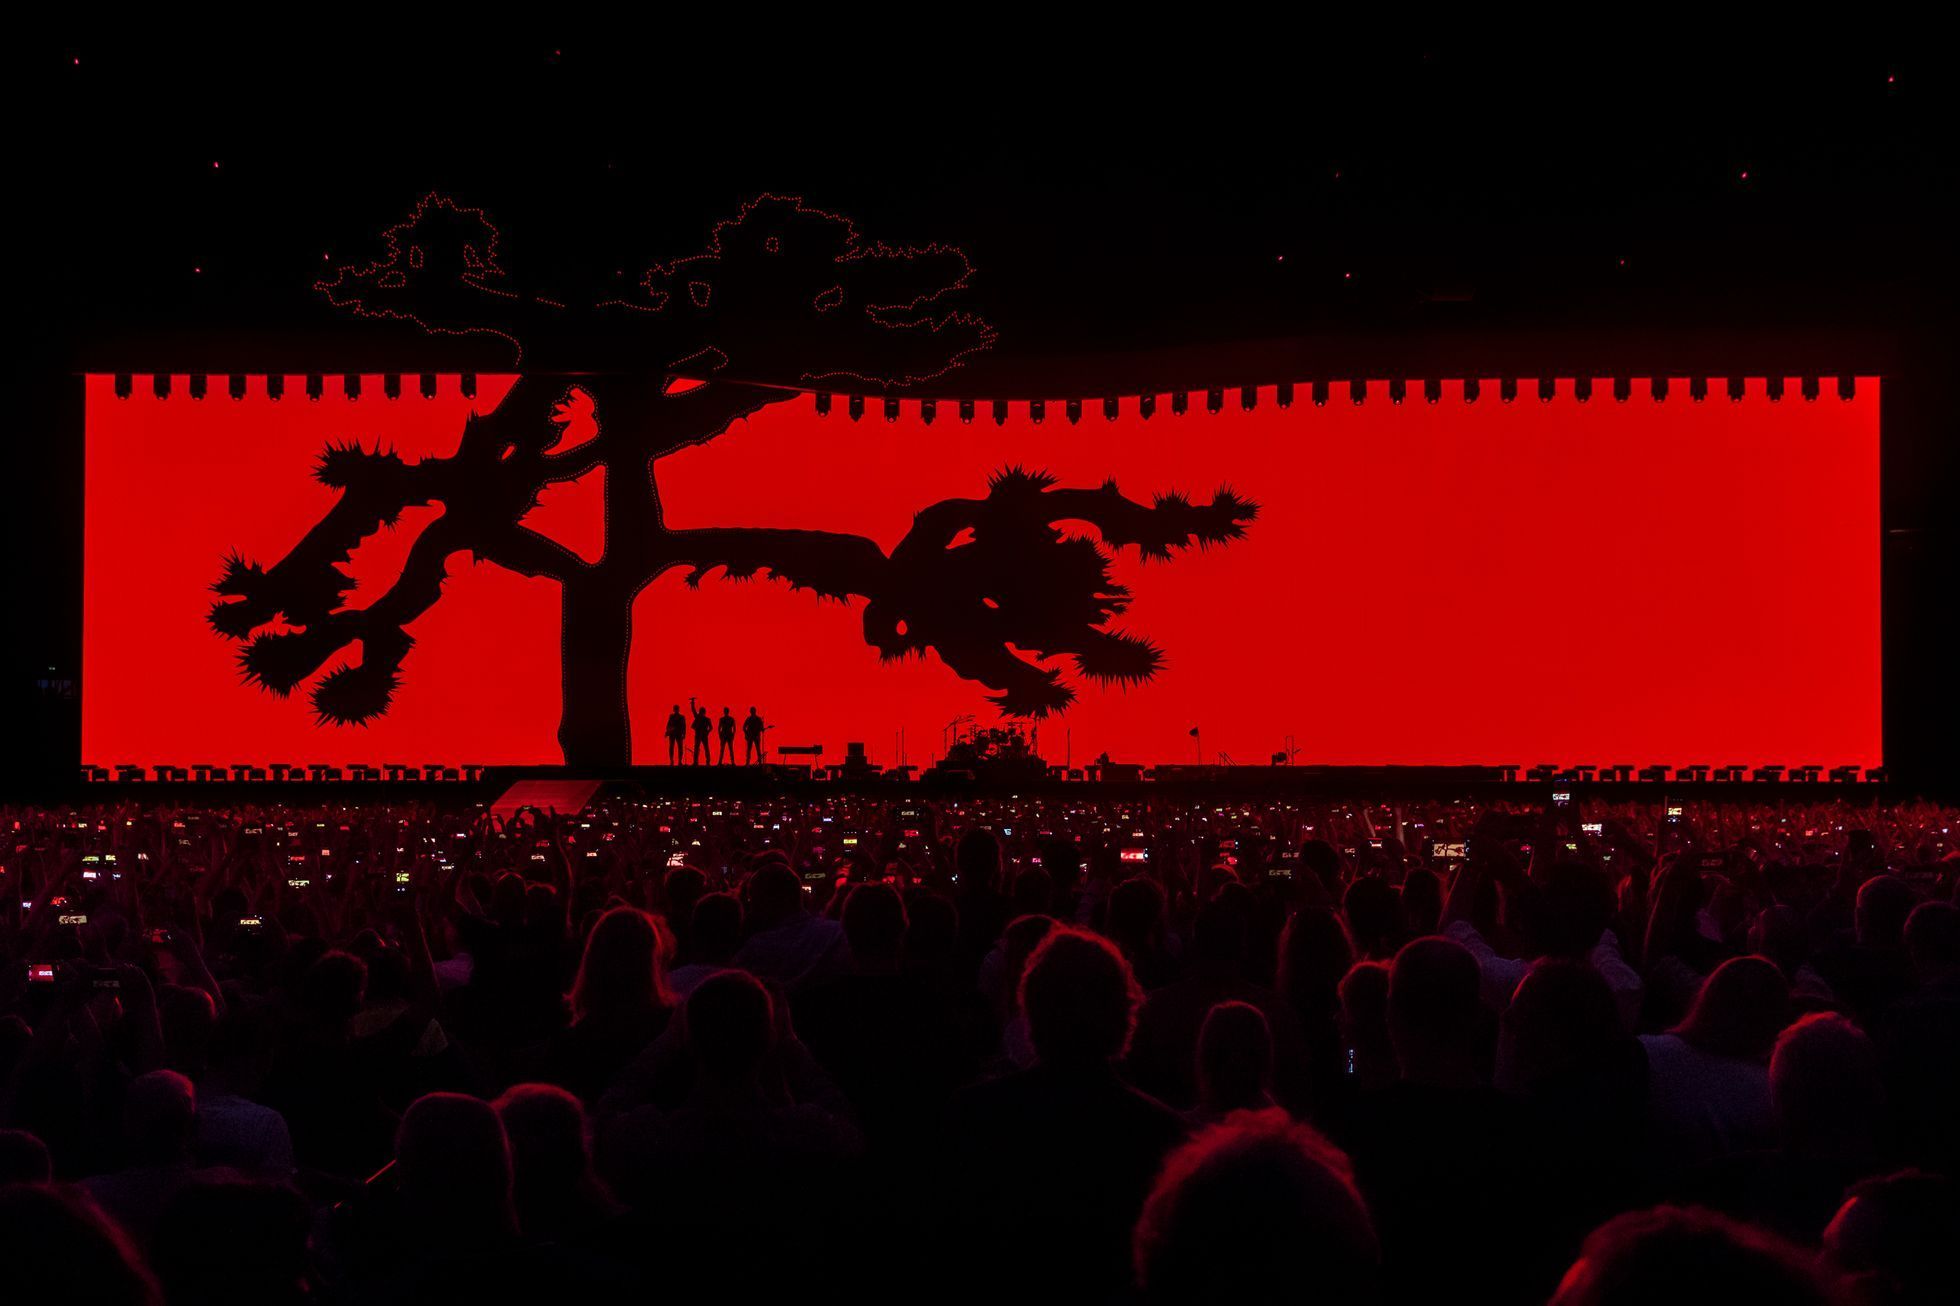 S touto fotkou U2 z koncertu v Amsterdamu uspěl Lukáš Bíba na loňských cenách Czech Press Photo v kategorii Umění a kultura.